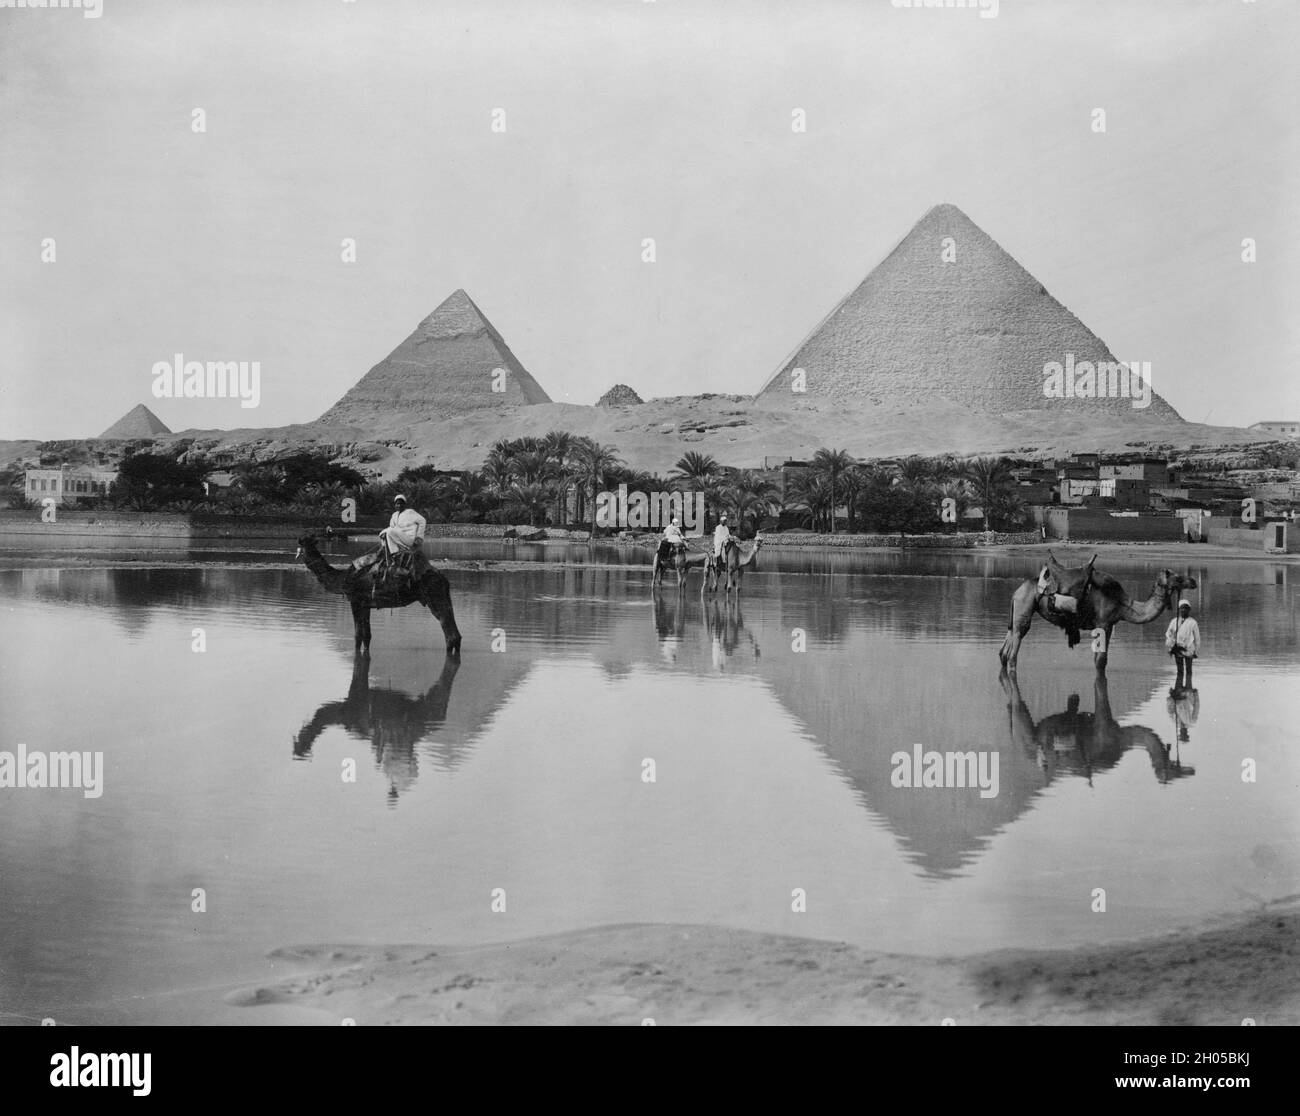 Ein Vintage-Foto um 1880 von Pyramiden auf dem Gizeh-Plateau in Ägypten. Es umfasst die große Pyramide von Gizeh, die Pyramide von Khafre und die Pyramide von Menkaure, zusammen mit ihren verbundenen Pyramidenkomplexen Stockfoto